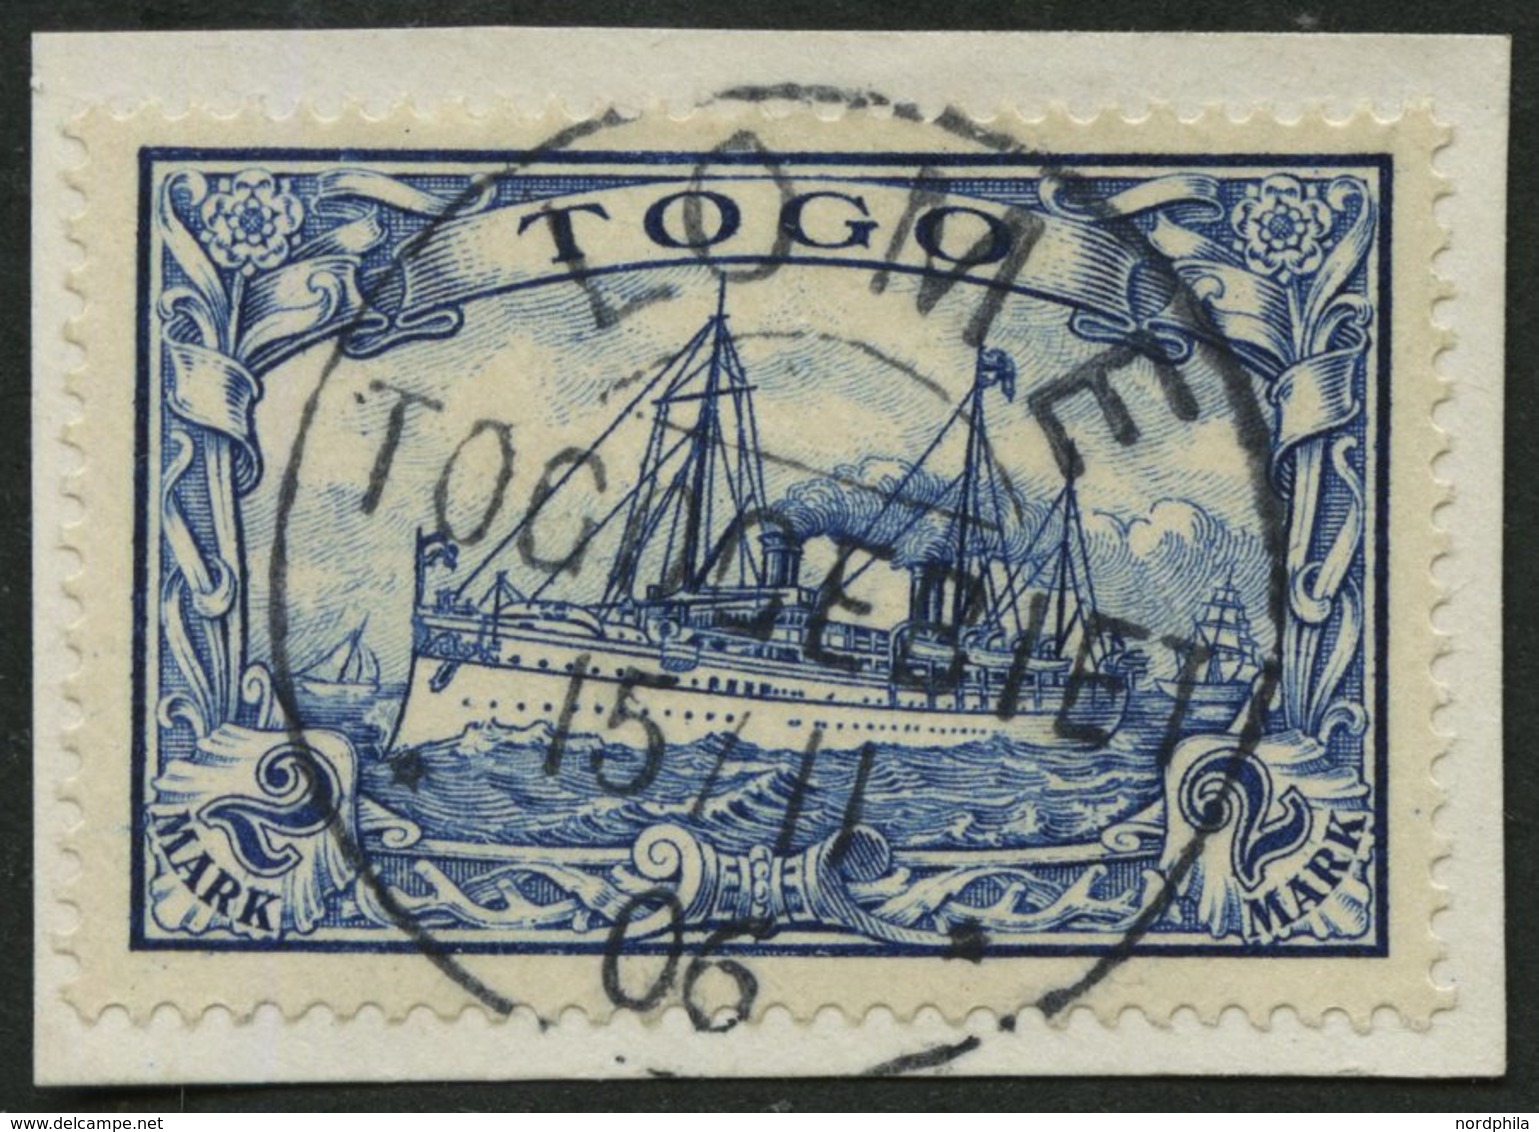 TOGO 17 BrfStk, 1900, 2 M. Schwärzlichblau, Prachtbriefstück, Mi. (100.-) - Togo